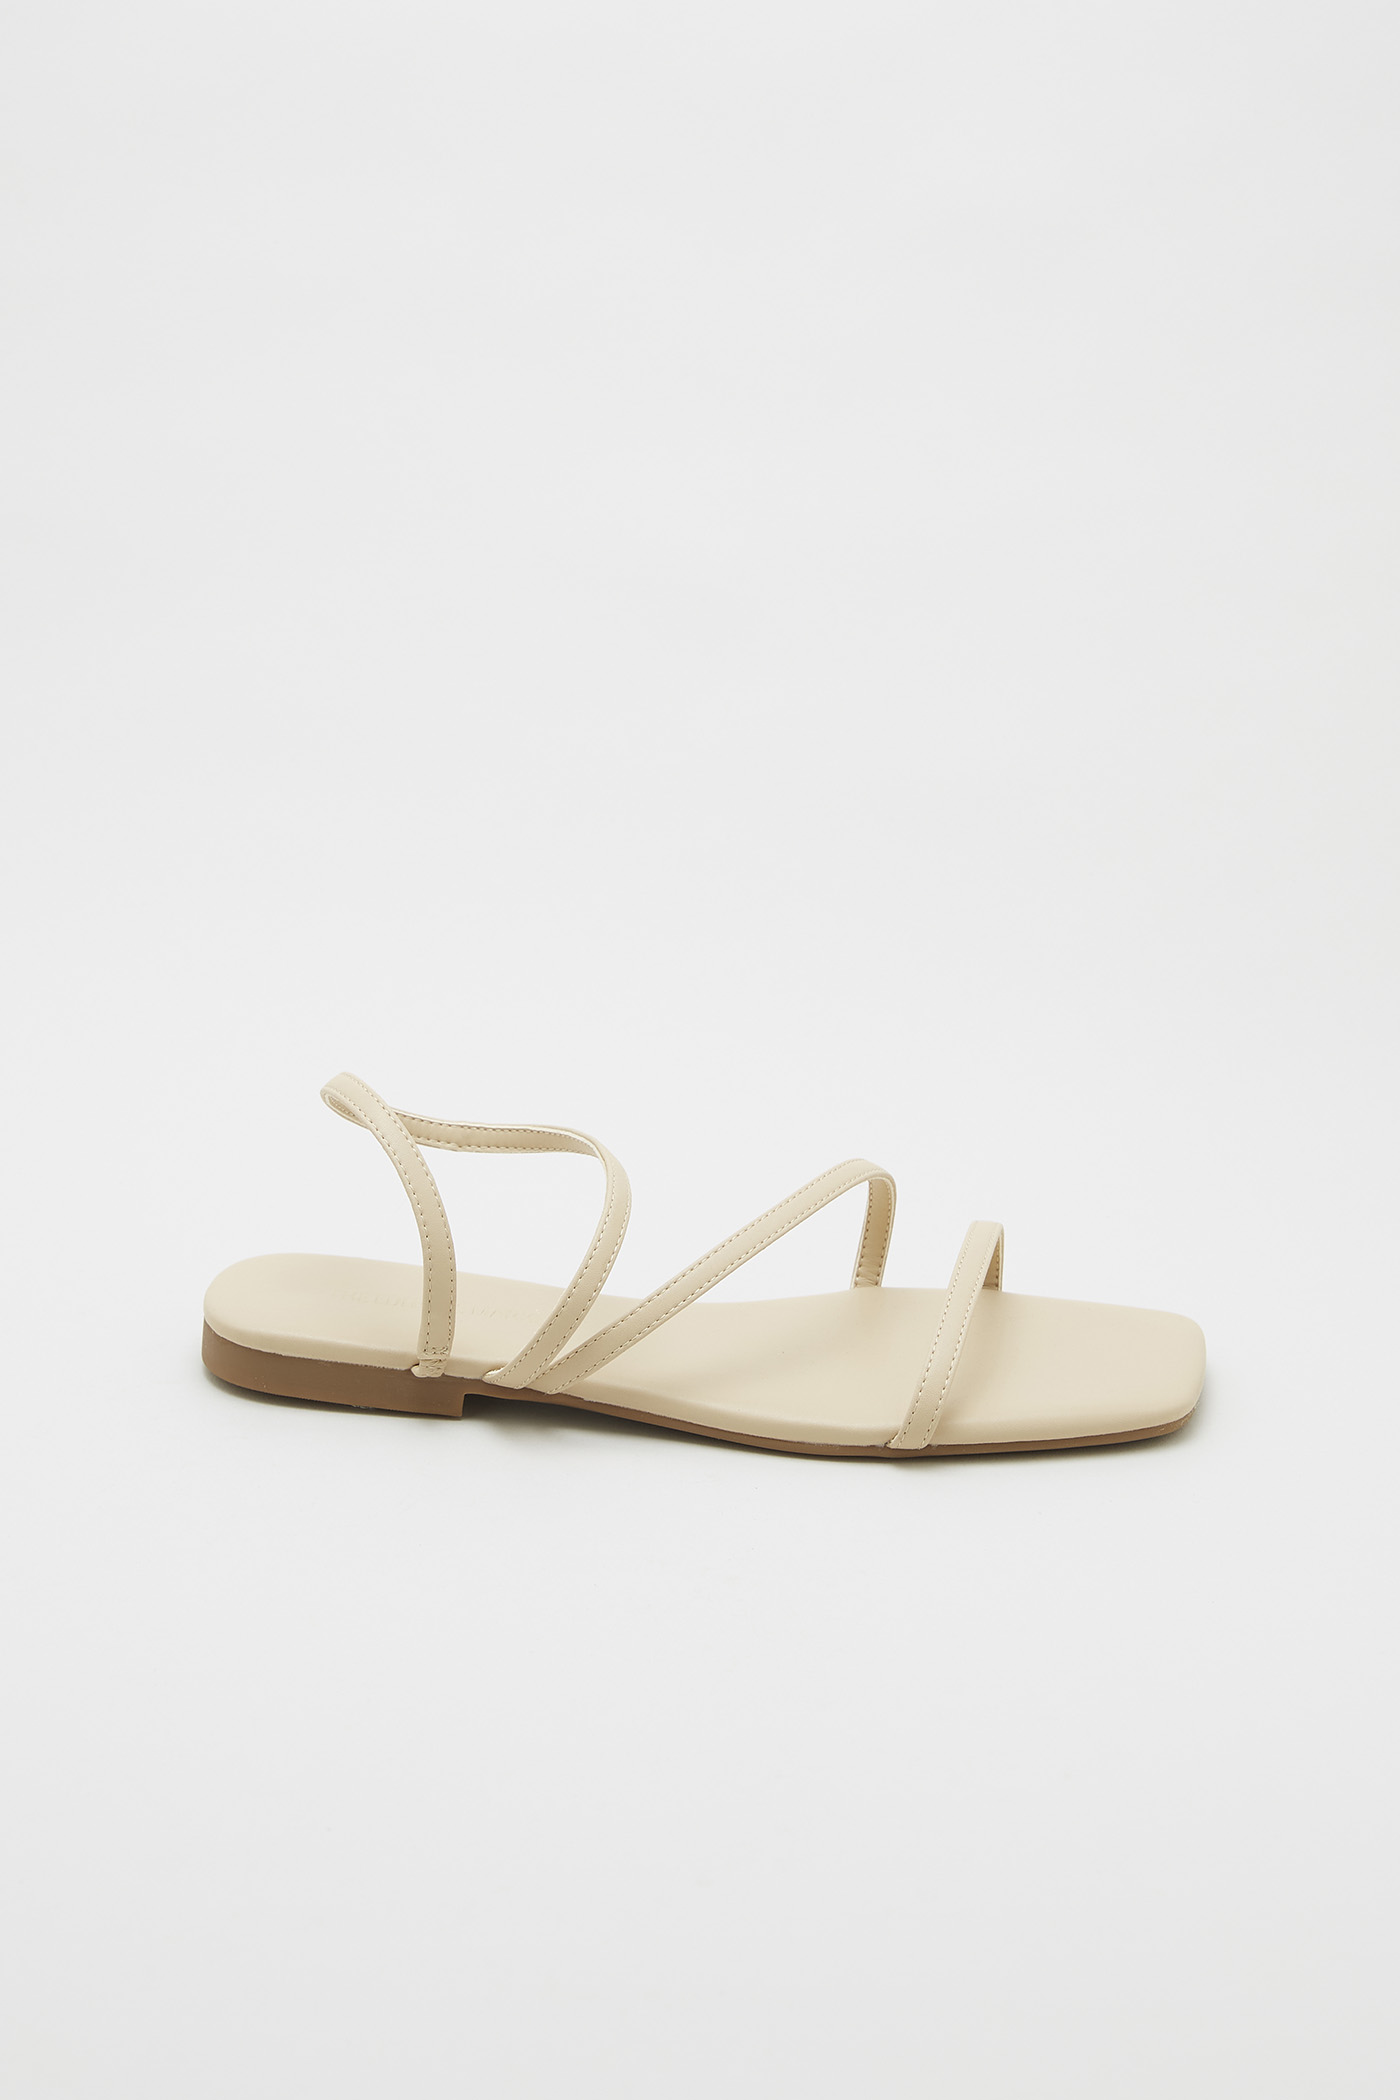 Danae Strappy Sandals